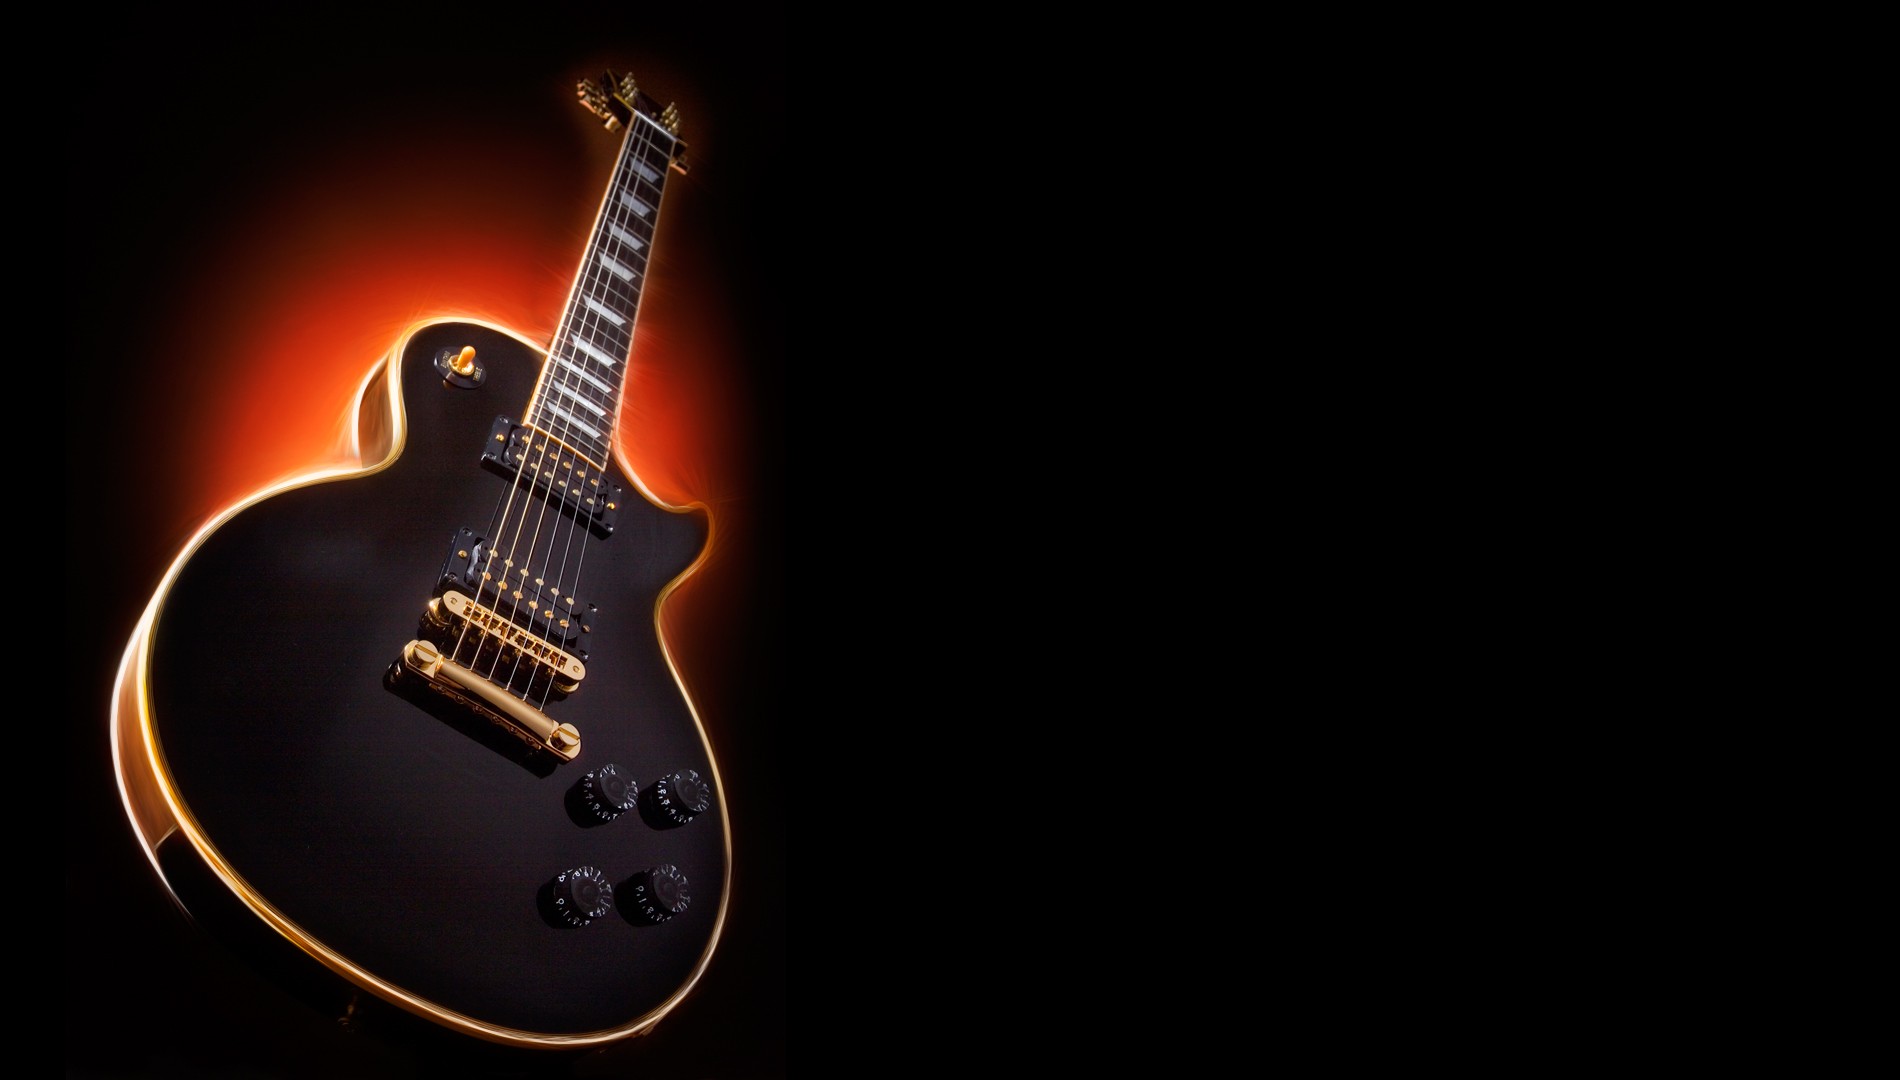 Gibson Les Paul Guitar Wallpaper Tokomo Pics